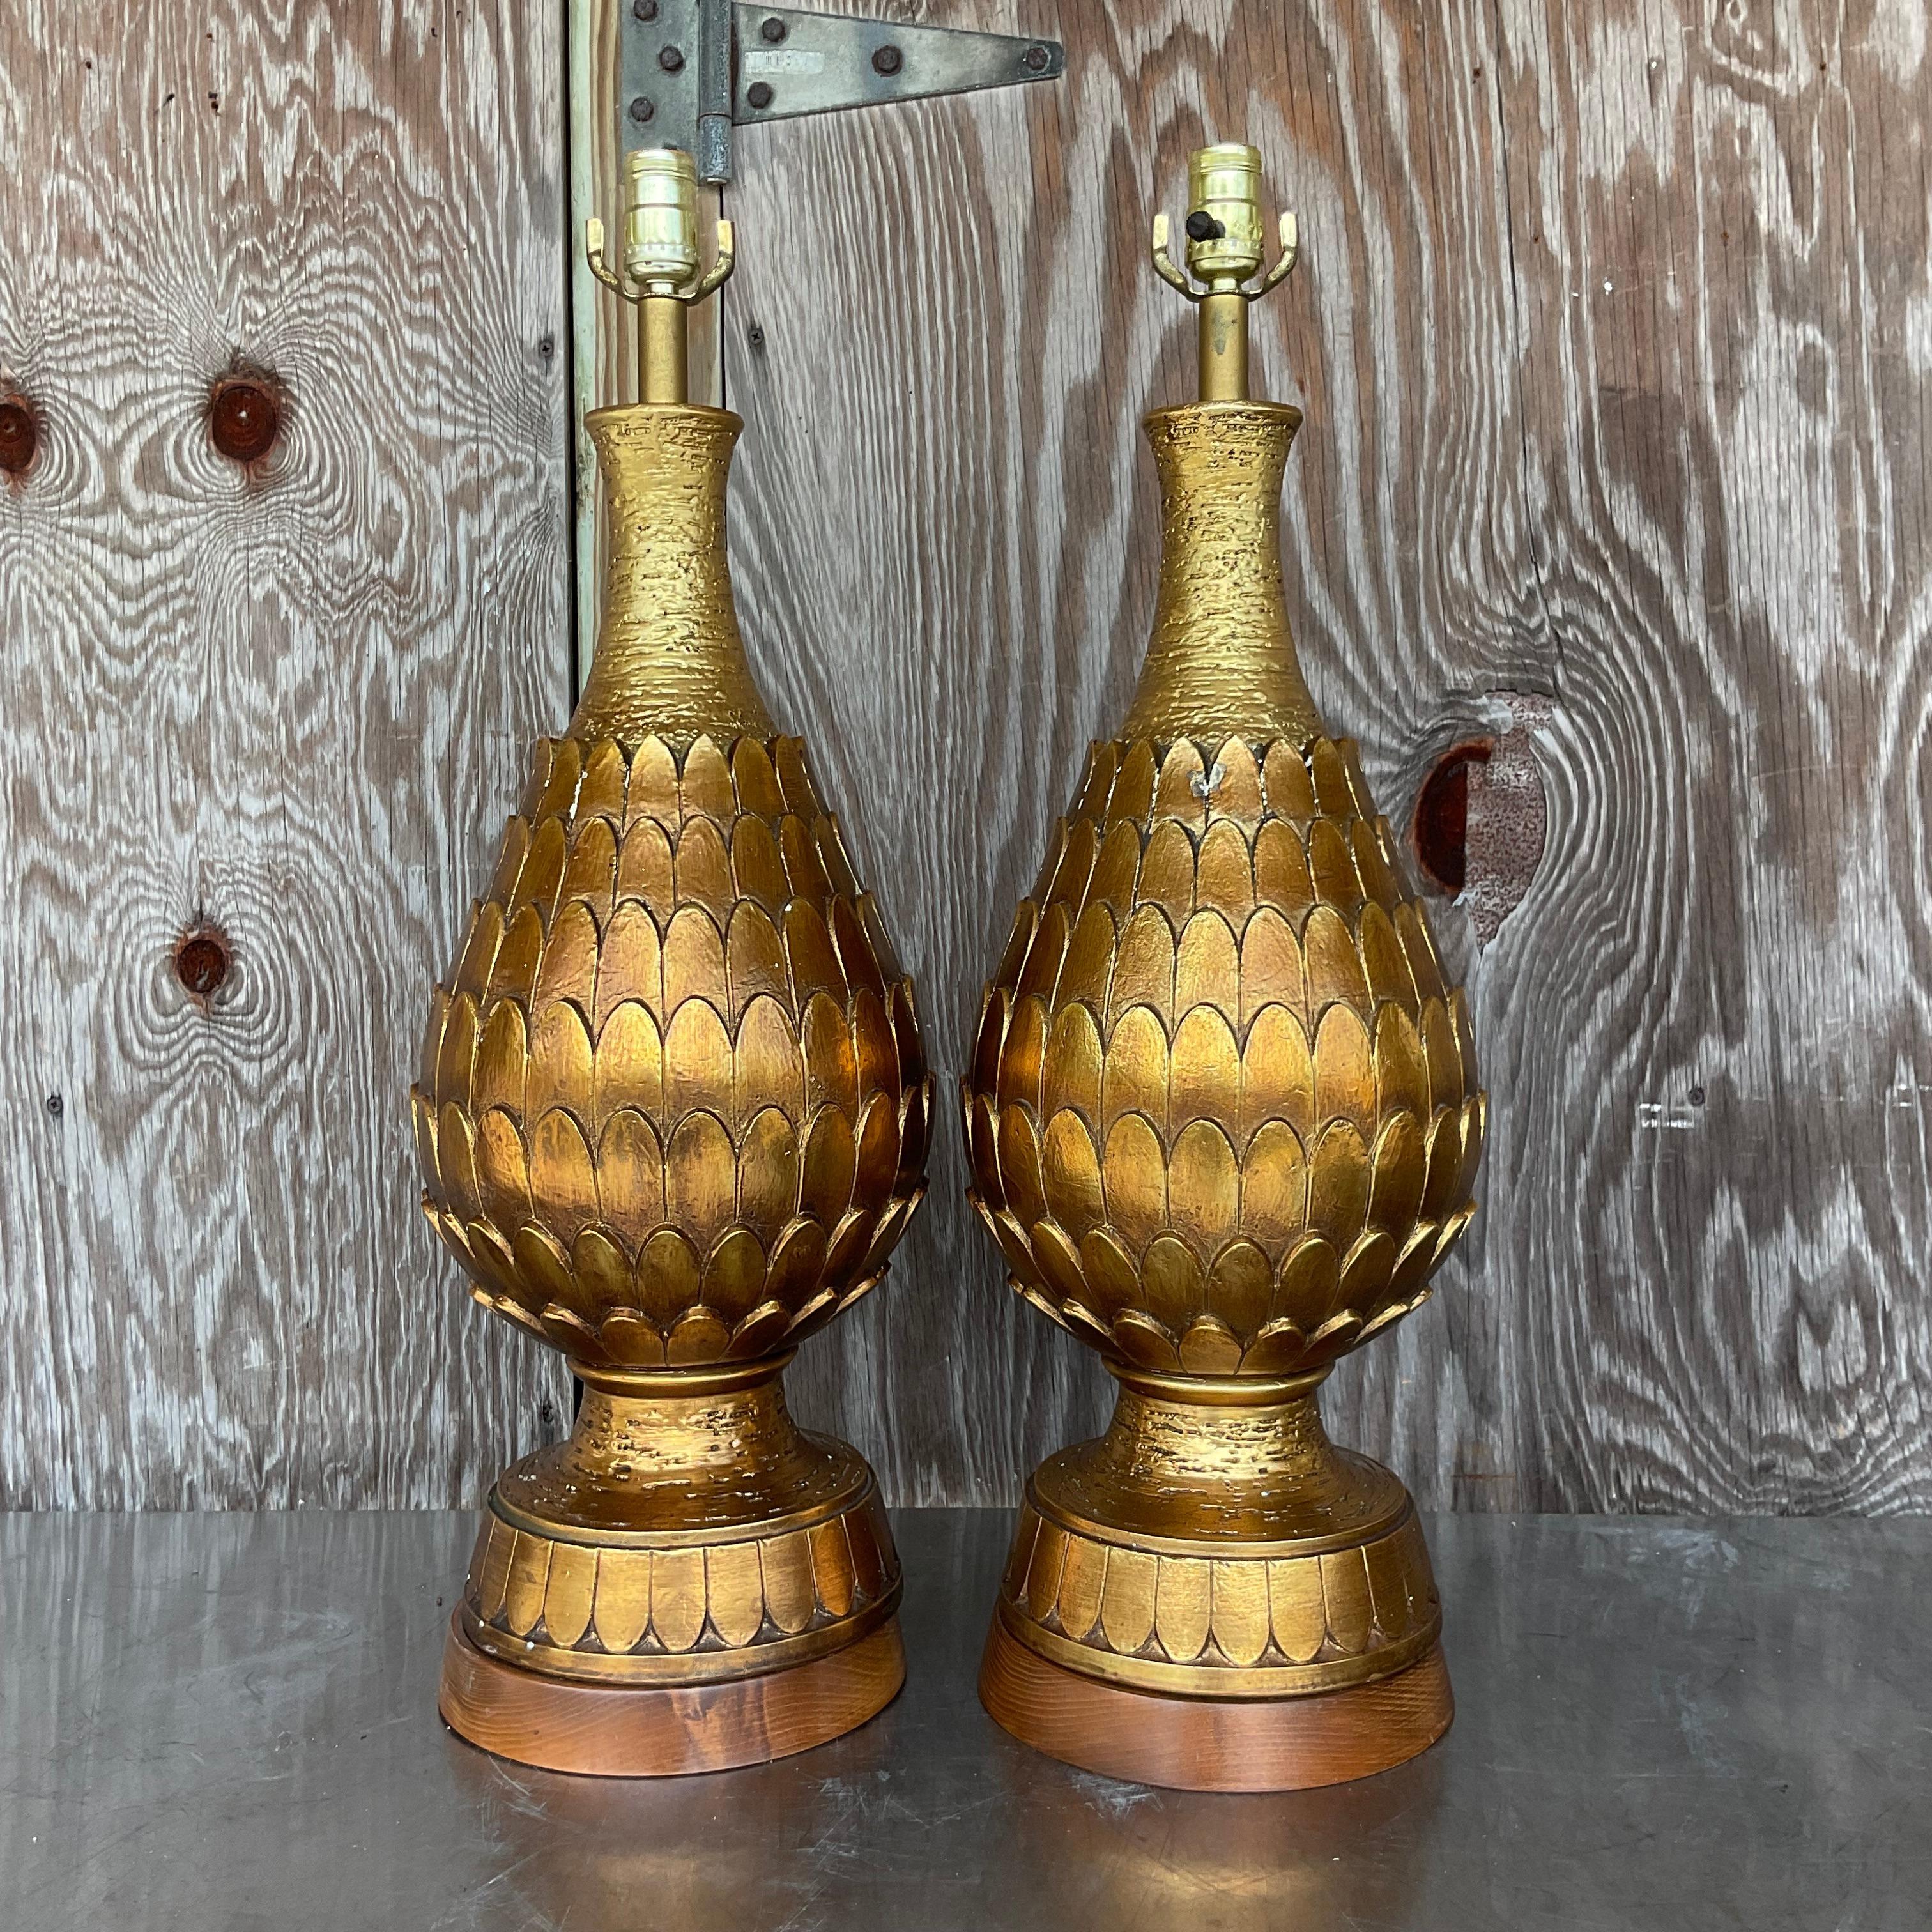 20th Century Vintage Regency Gilt Artichoke Lamps - a Pair